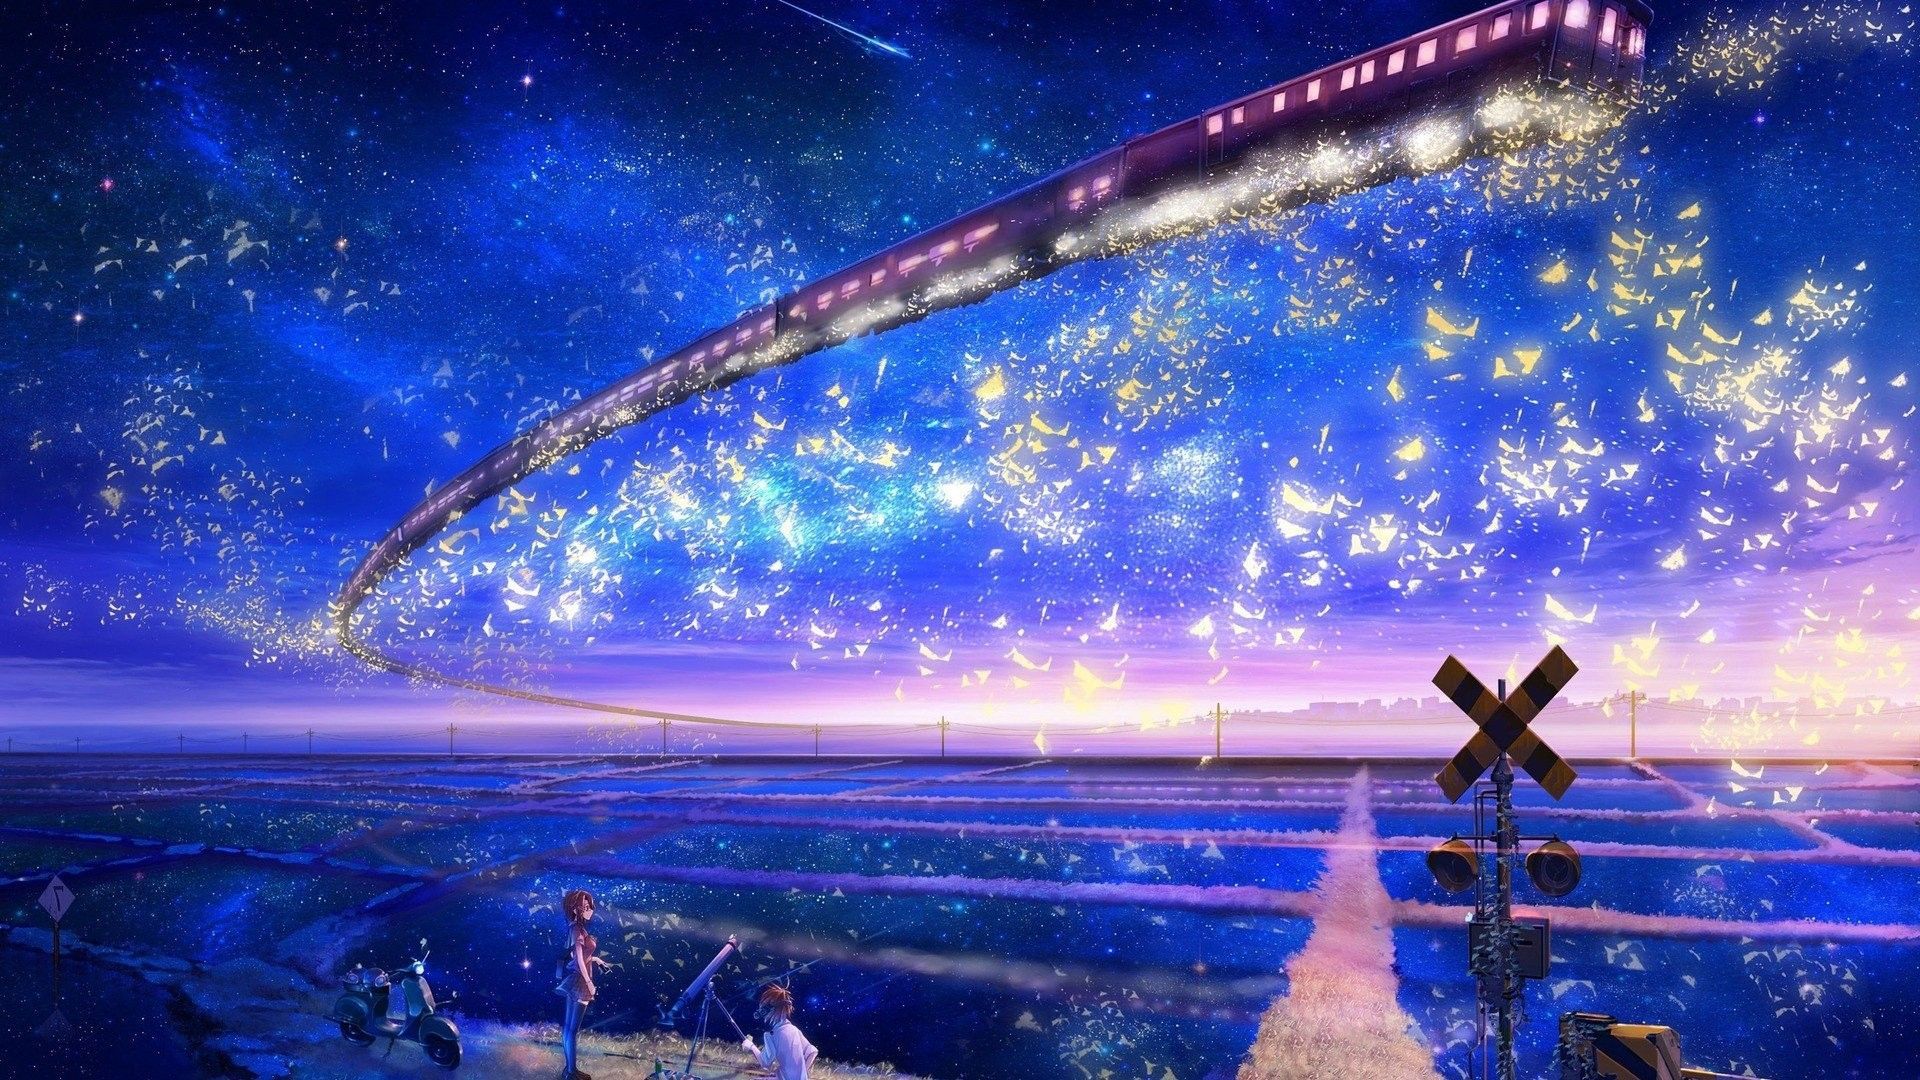 Anime Night Sky Wallpaper Free Anime Night Sky Background